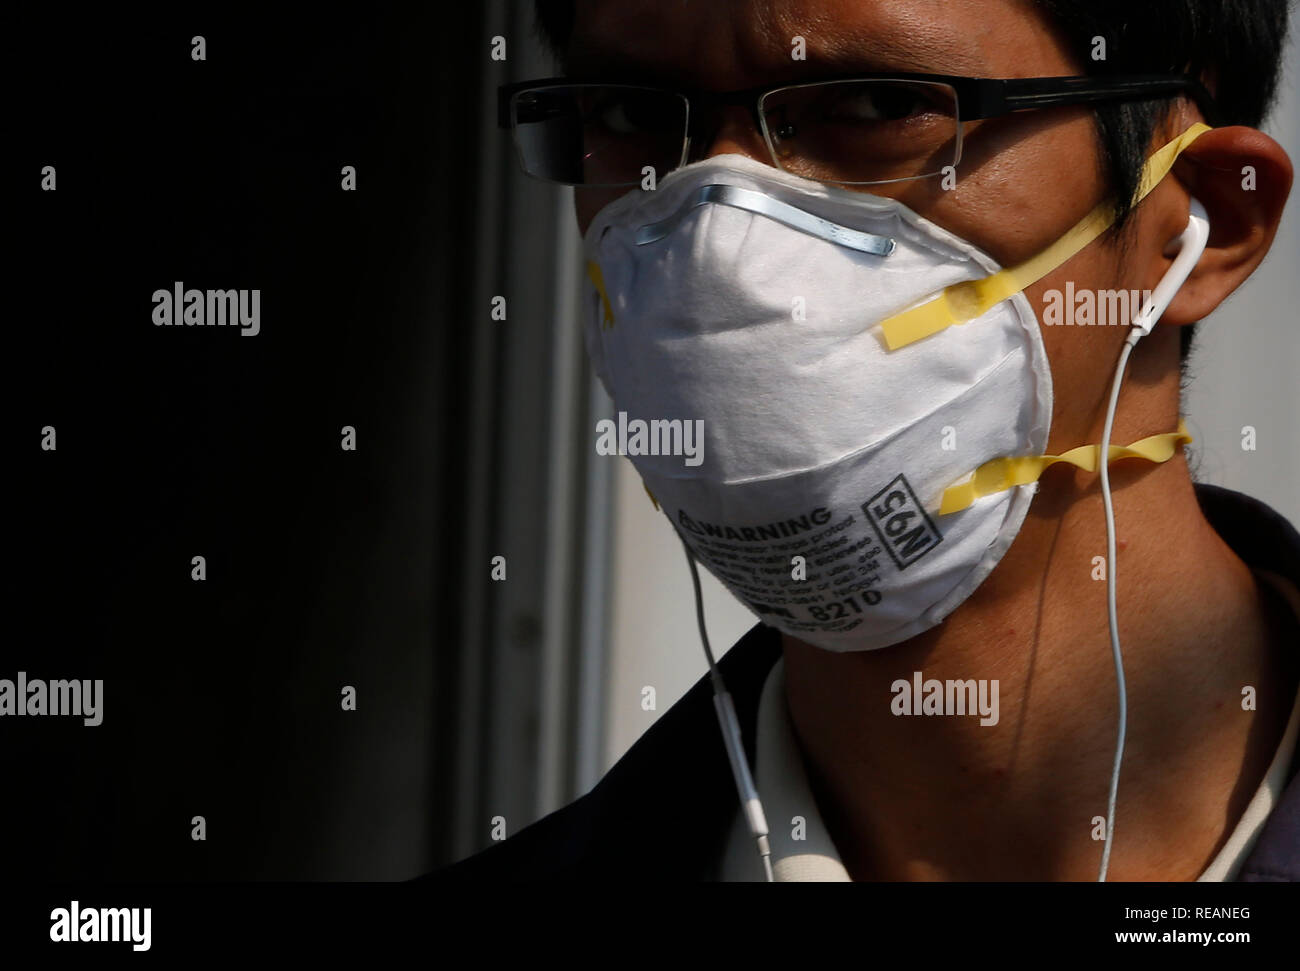 Ein Mann mit einer Maske in eine schlechte Luftqualität Tag in Bangkok. Bangkoks Luftverschmutzung Krise verschlechtert heute wie vorhergesagt, mit mehreren Standorten entlang von Hauptverkehrsstraßen und 16 anderen Bereichen Reporting gefährliche Konzentrationen von PM2,5, die Gesundheit gefährdenden, luftgetragene Partikel von 2,5 Mikrometer oder weniger im Durchmesser. Stockfoto